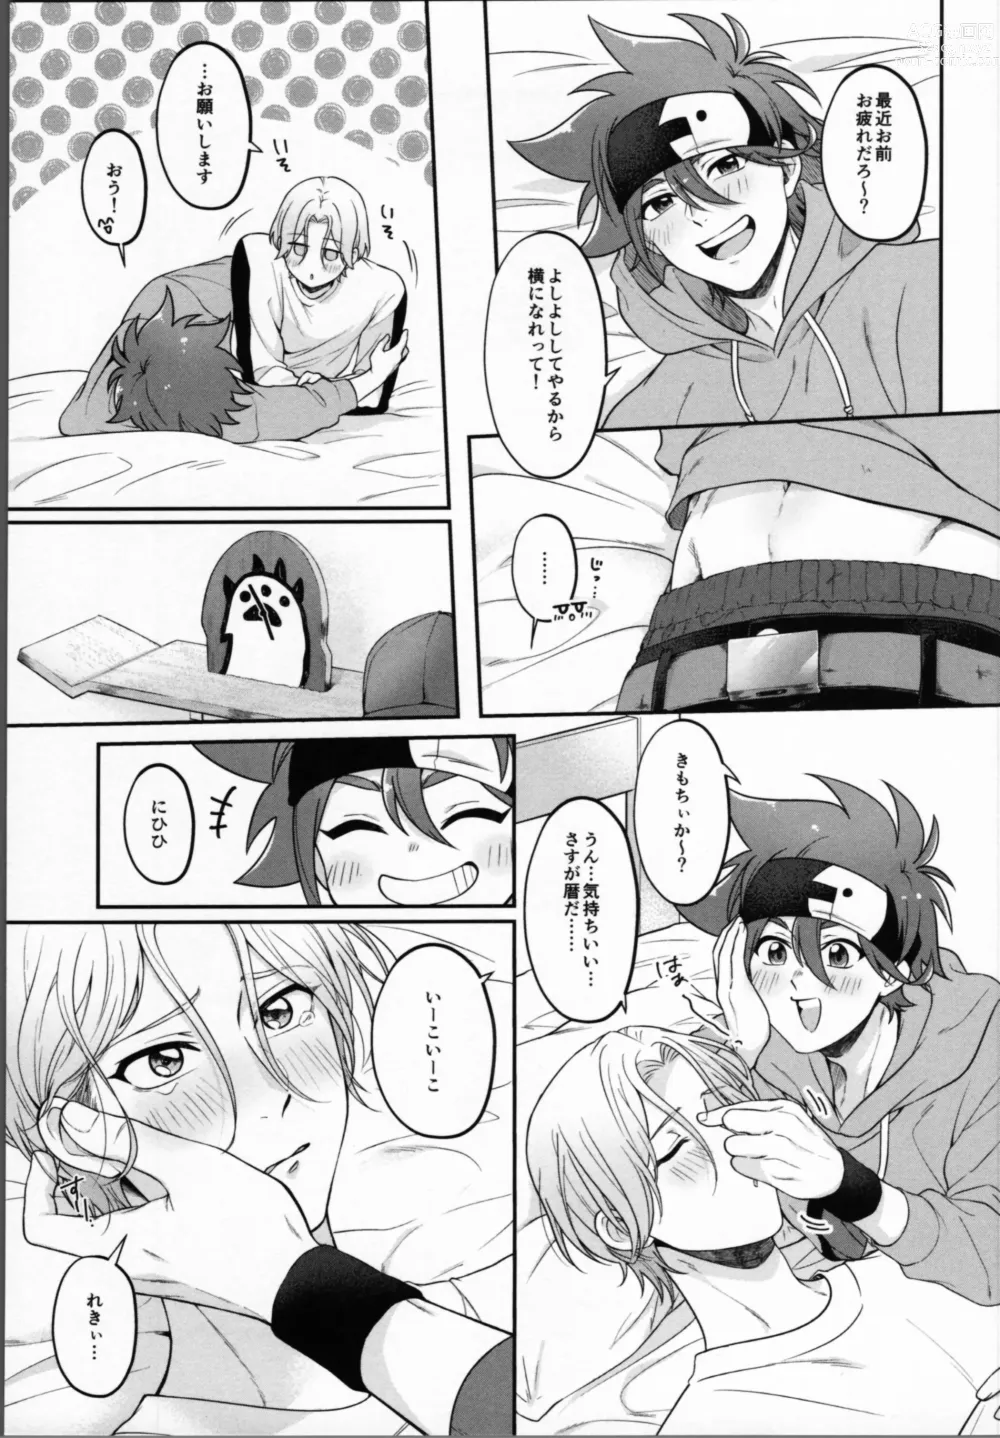 Page 8 of doujinshi 2 Tsuki ga kirai to iukeredo